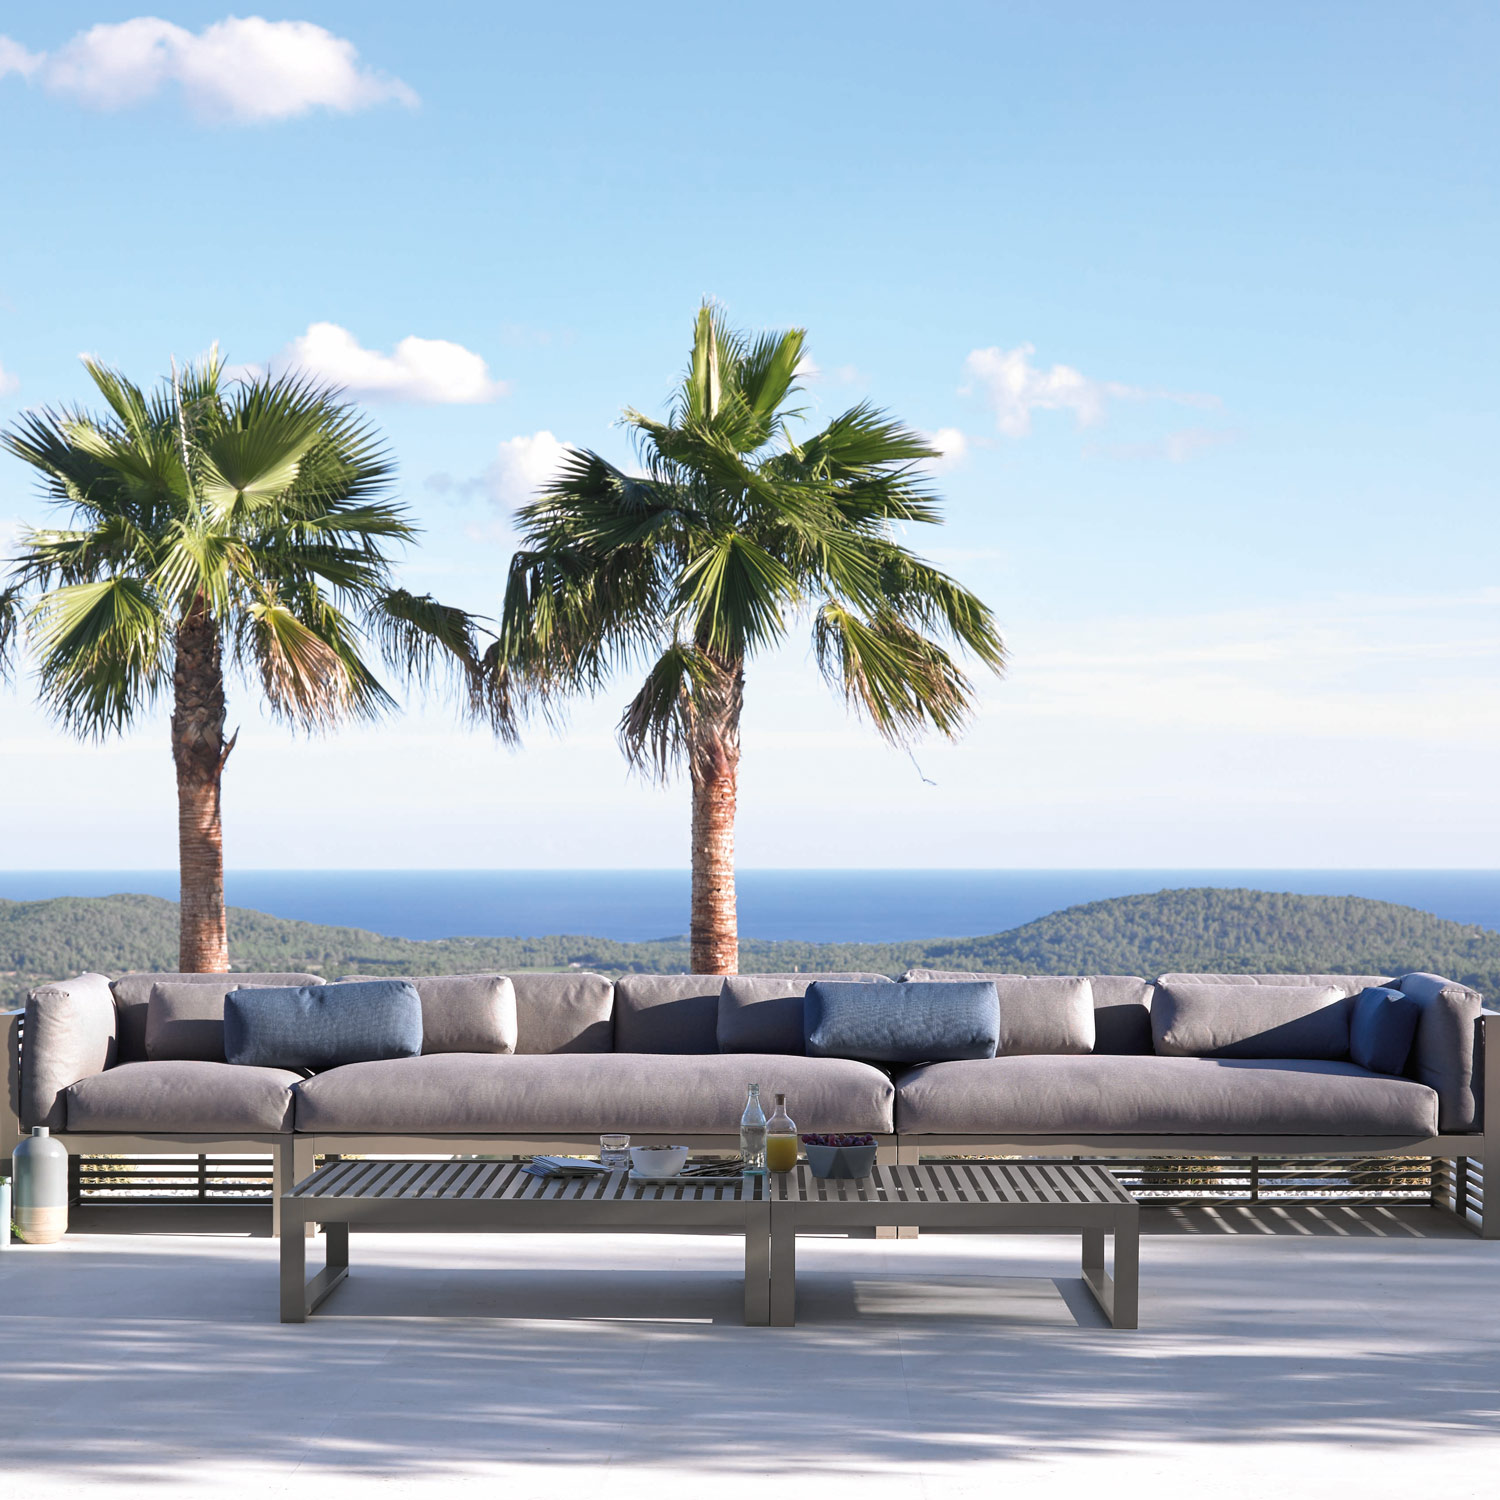 DNA luksuriøse møbler lakeret i sand til loungeområde med udsigt fra Gitz Design og Gandia Blasco